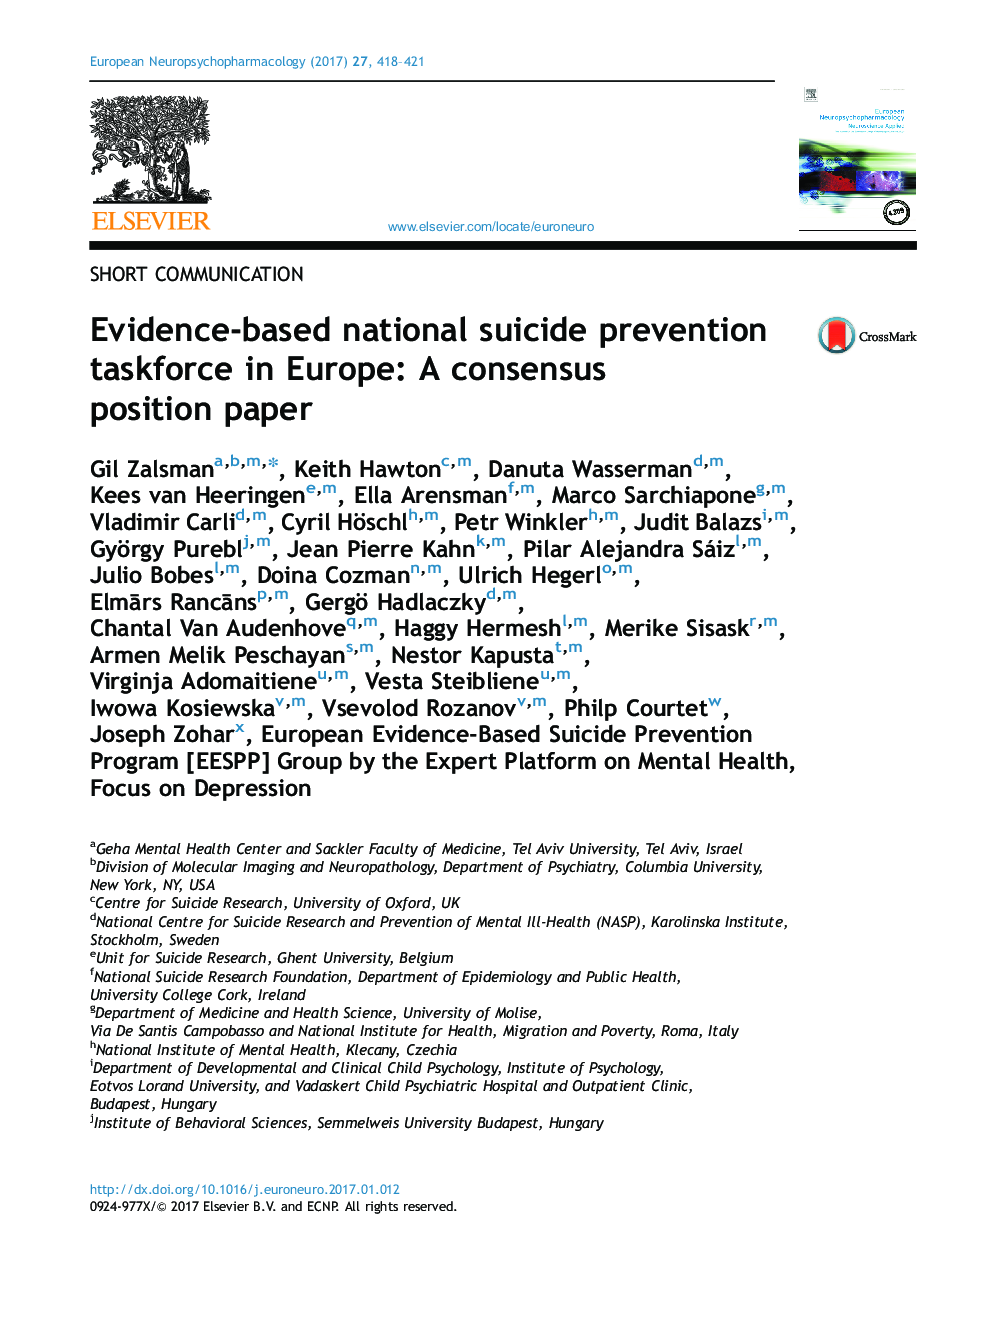 کارگروه پیشگیری از خودکشی در اروپا مبتنی بر شواهد در اروپا: یک مقاله موضعی در مورد توافقنامه 